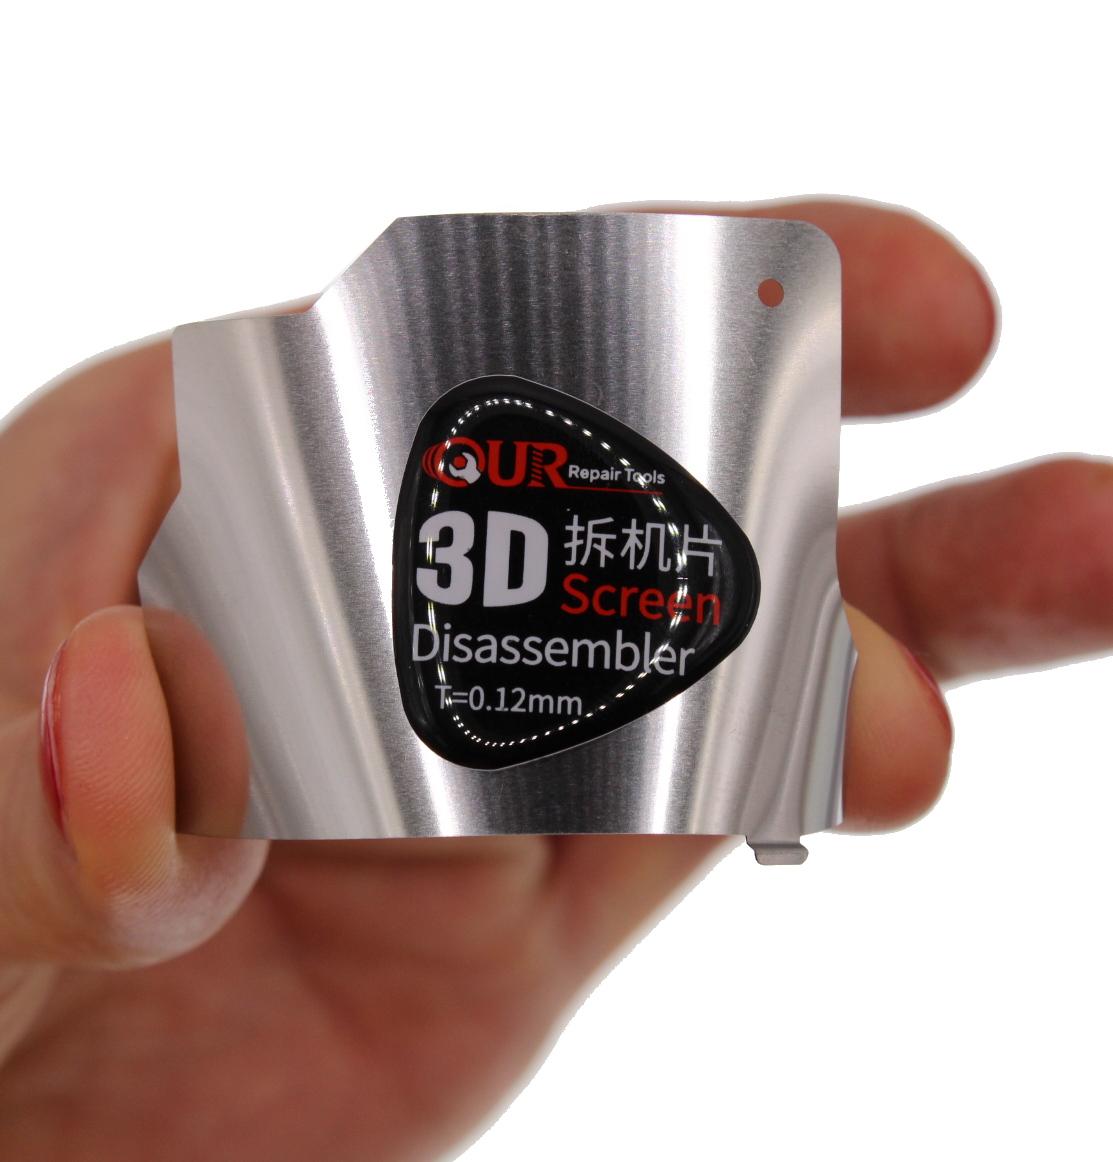 Musttby 3D Screen Disassembler T=0,12mm - Tenký kovový otvírák pro LCD